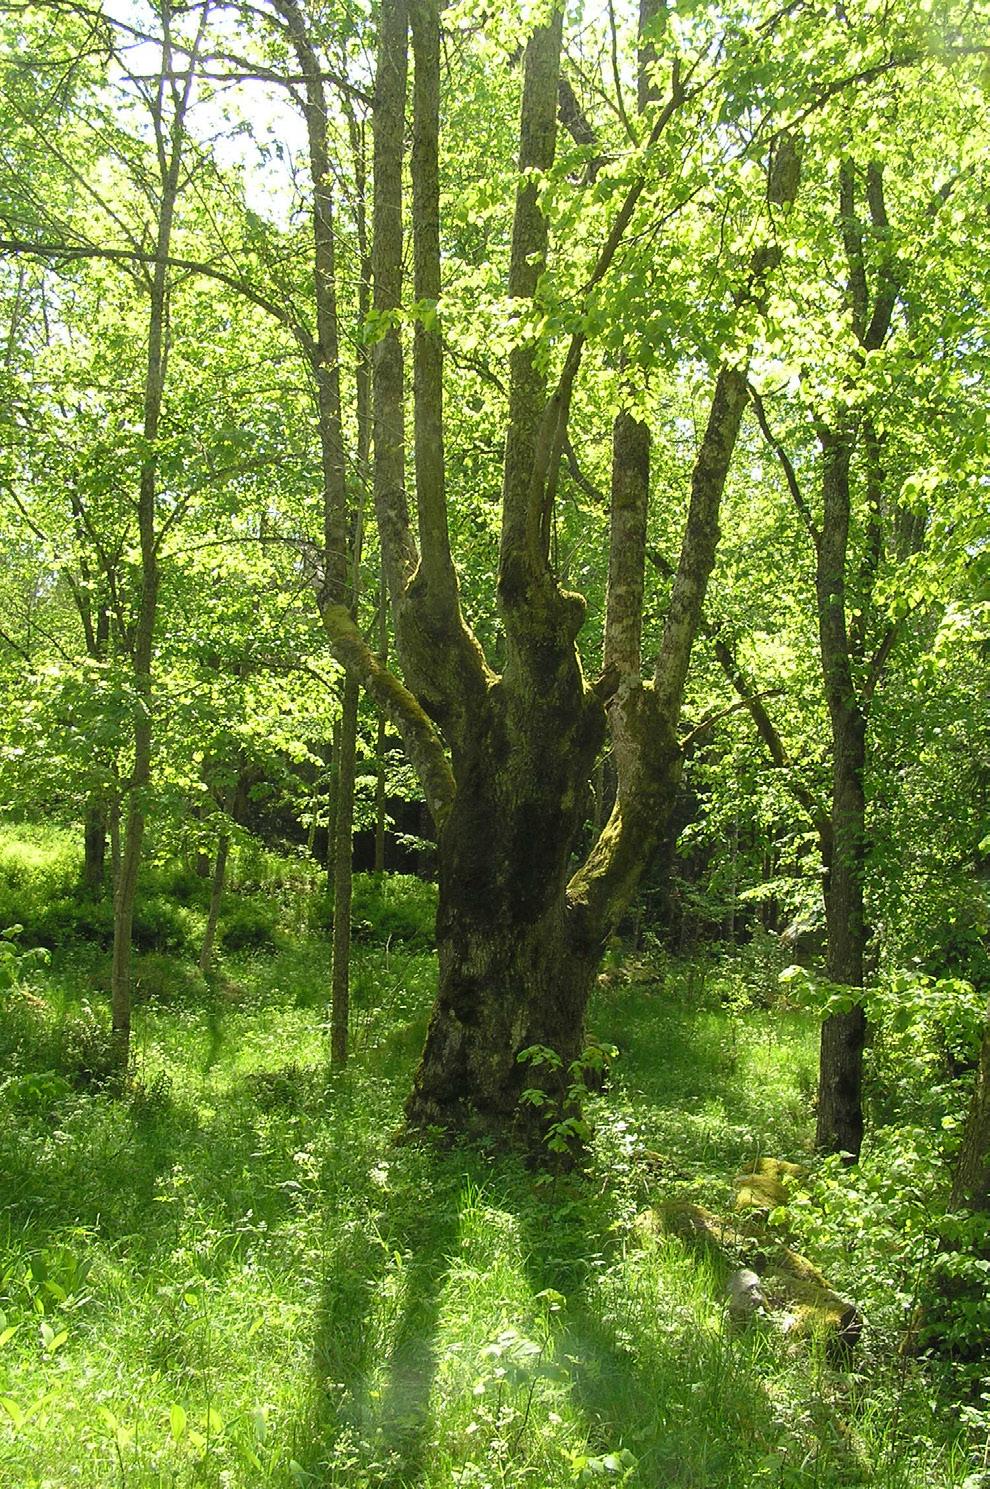 De vanligaste hamlade träden i de inventerade länen är lindar, askar eller lönnar och de flesta träden klassades som friska.